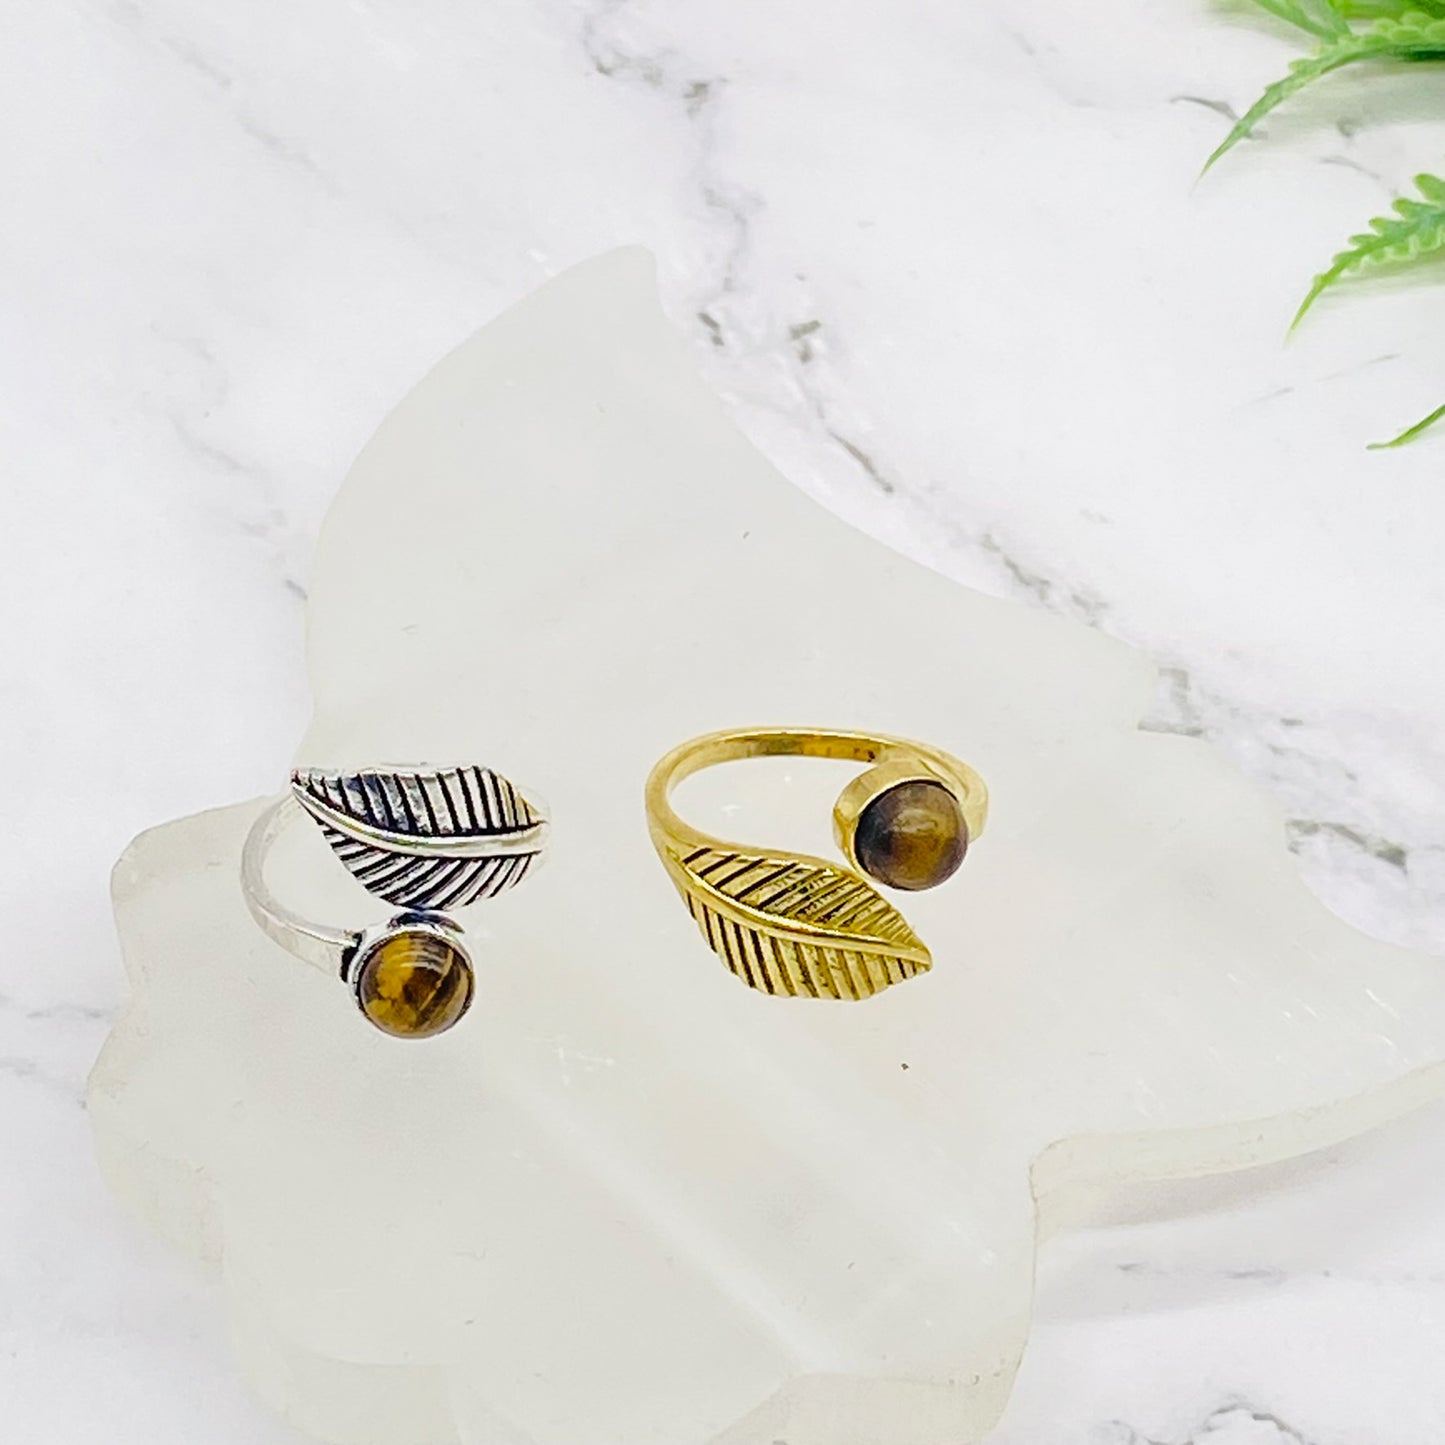 Handmade Silver Rings, Leaf Style Rings, Bohemian Jewelry, Adjustable Rings, Minimalistic Rings, Boho Style, Crystal Rings